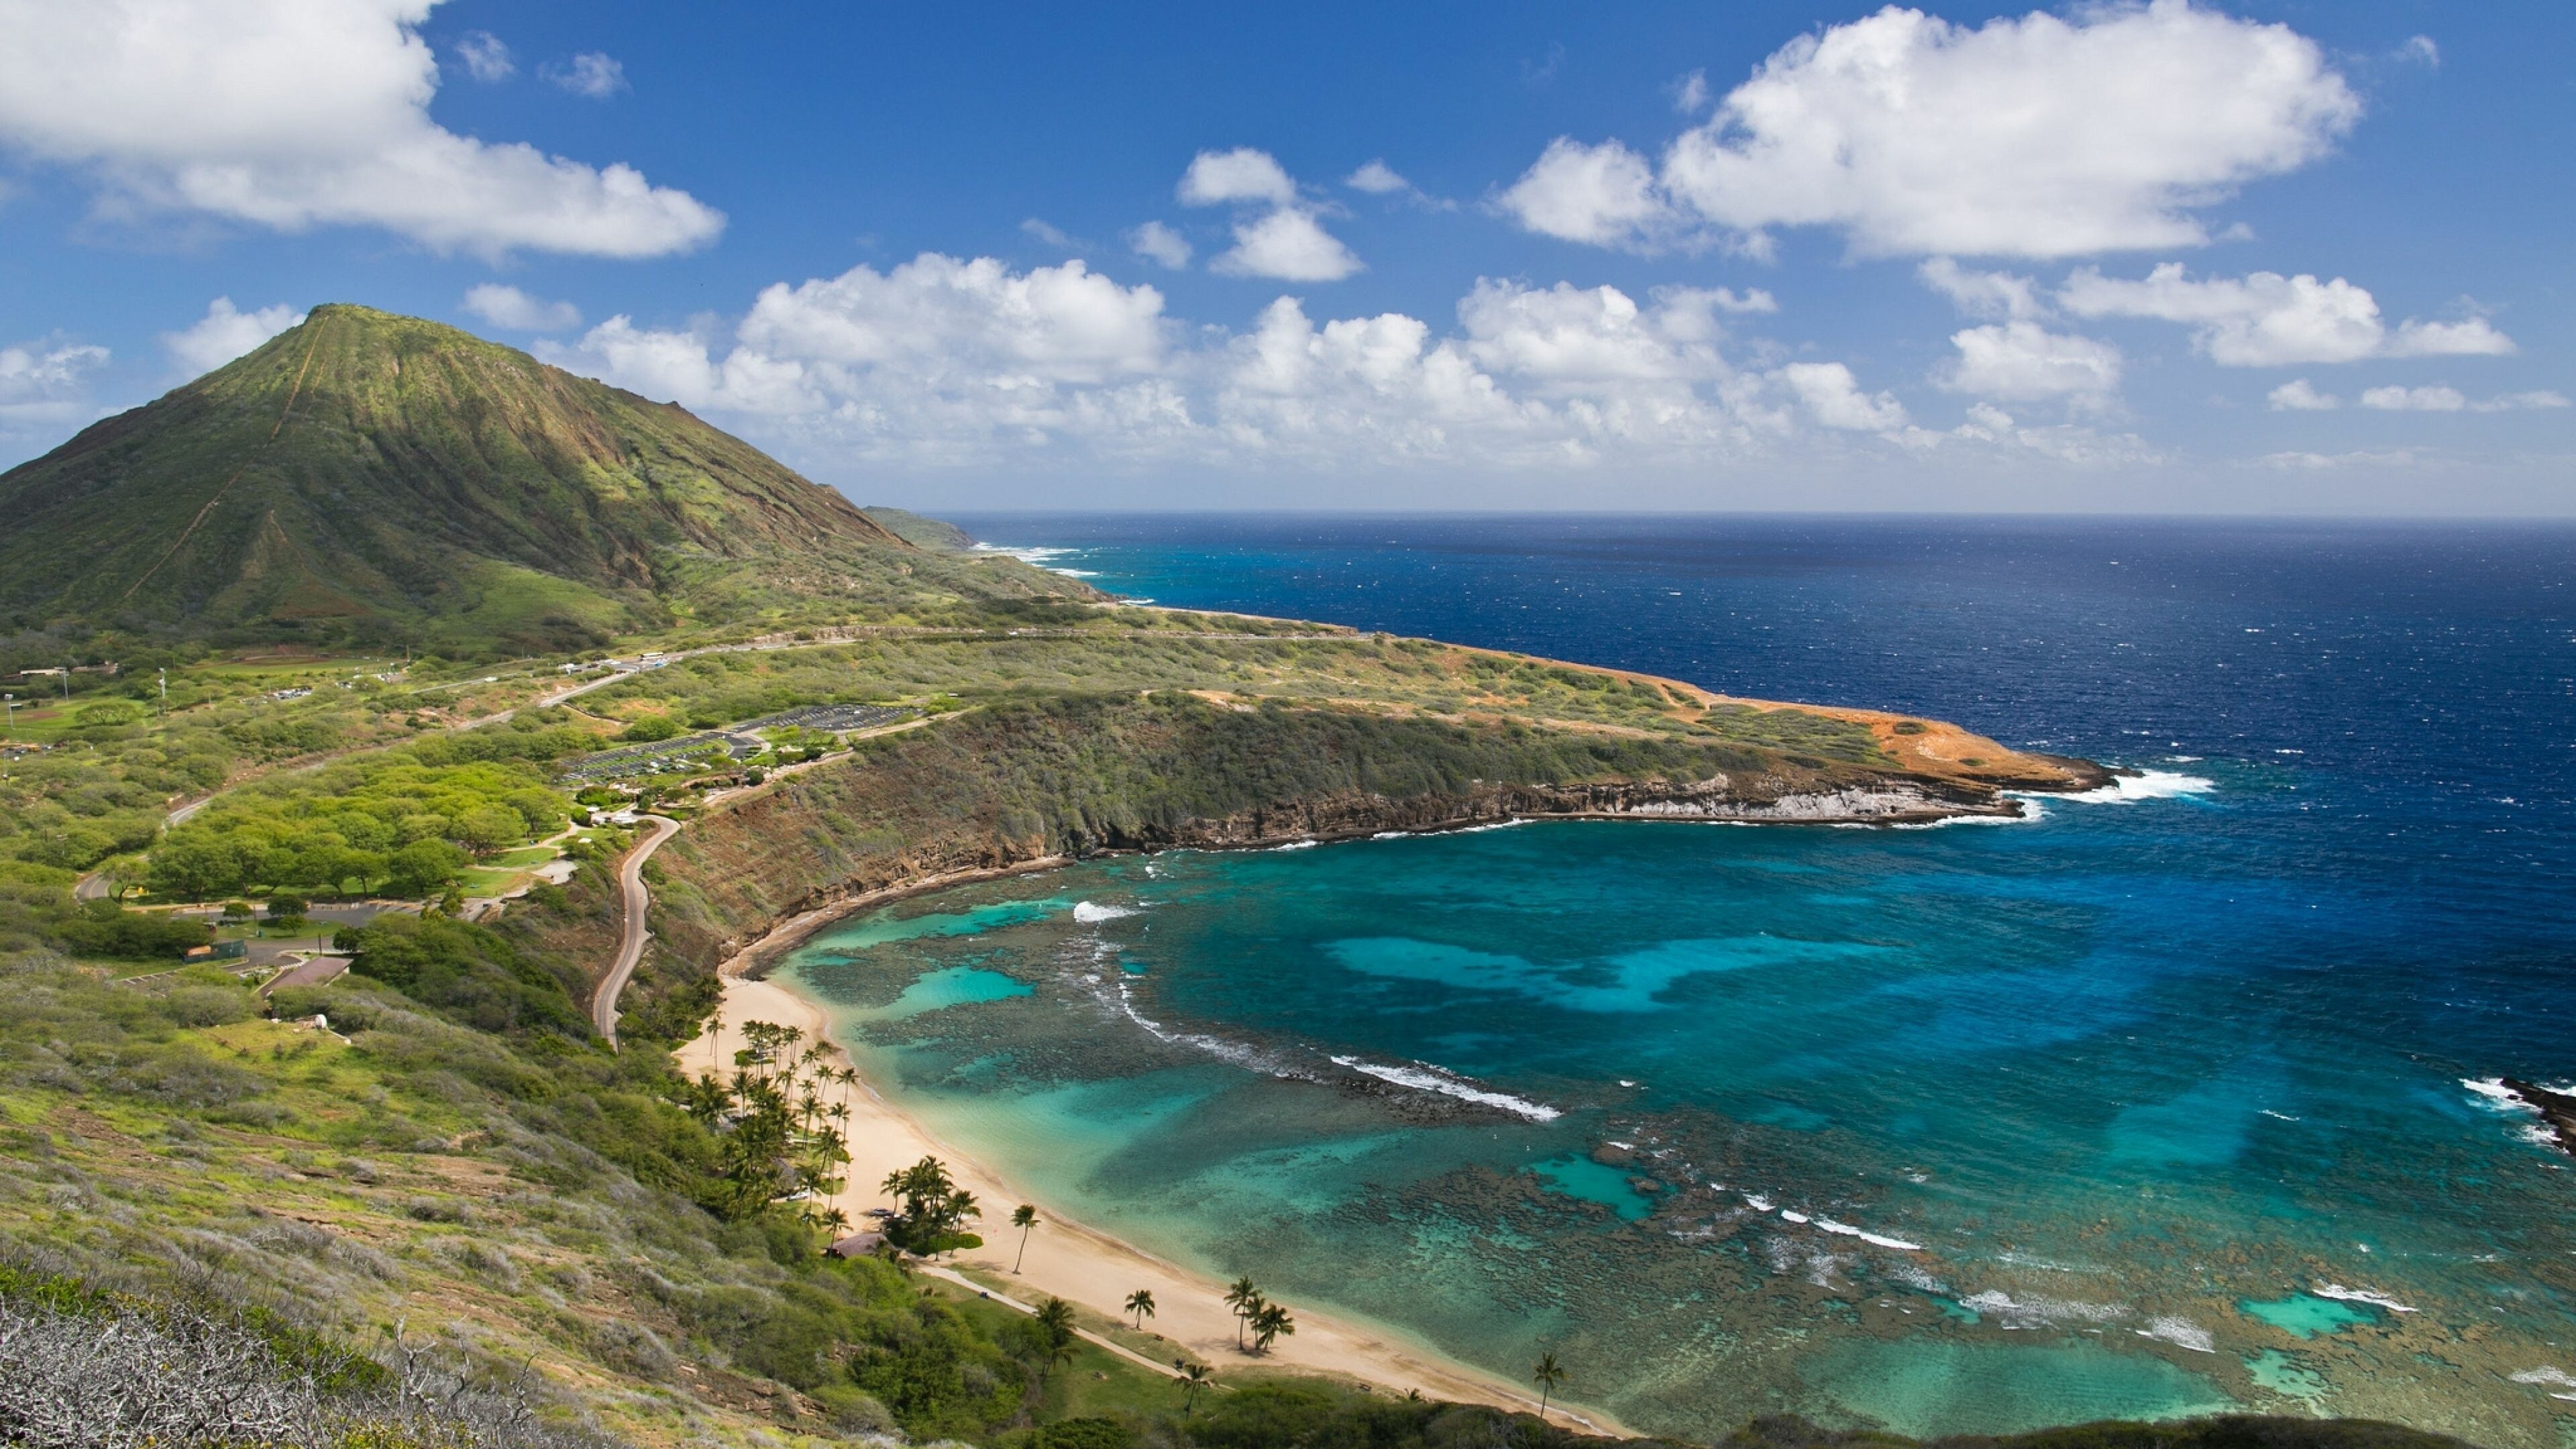 Kauai, Hawaii 4K backgrounds, High resolution, Home screen, 3840x2160 4K Desktop